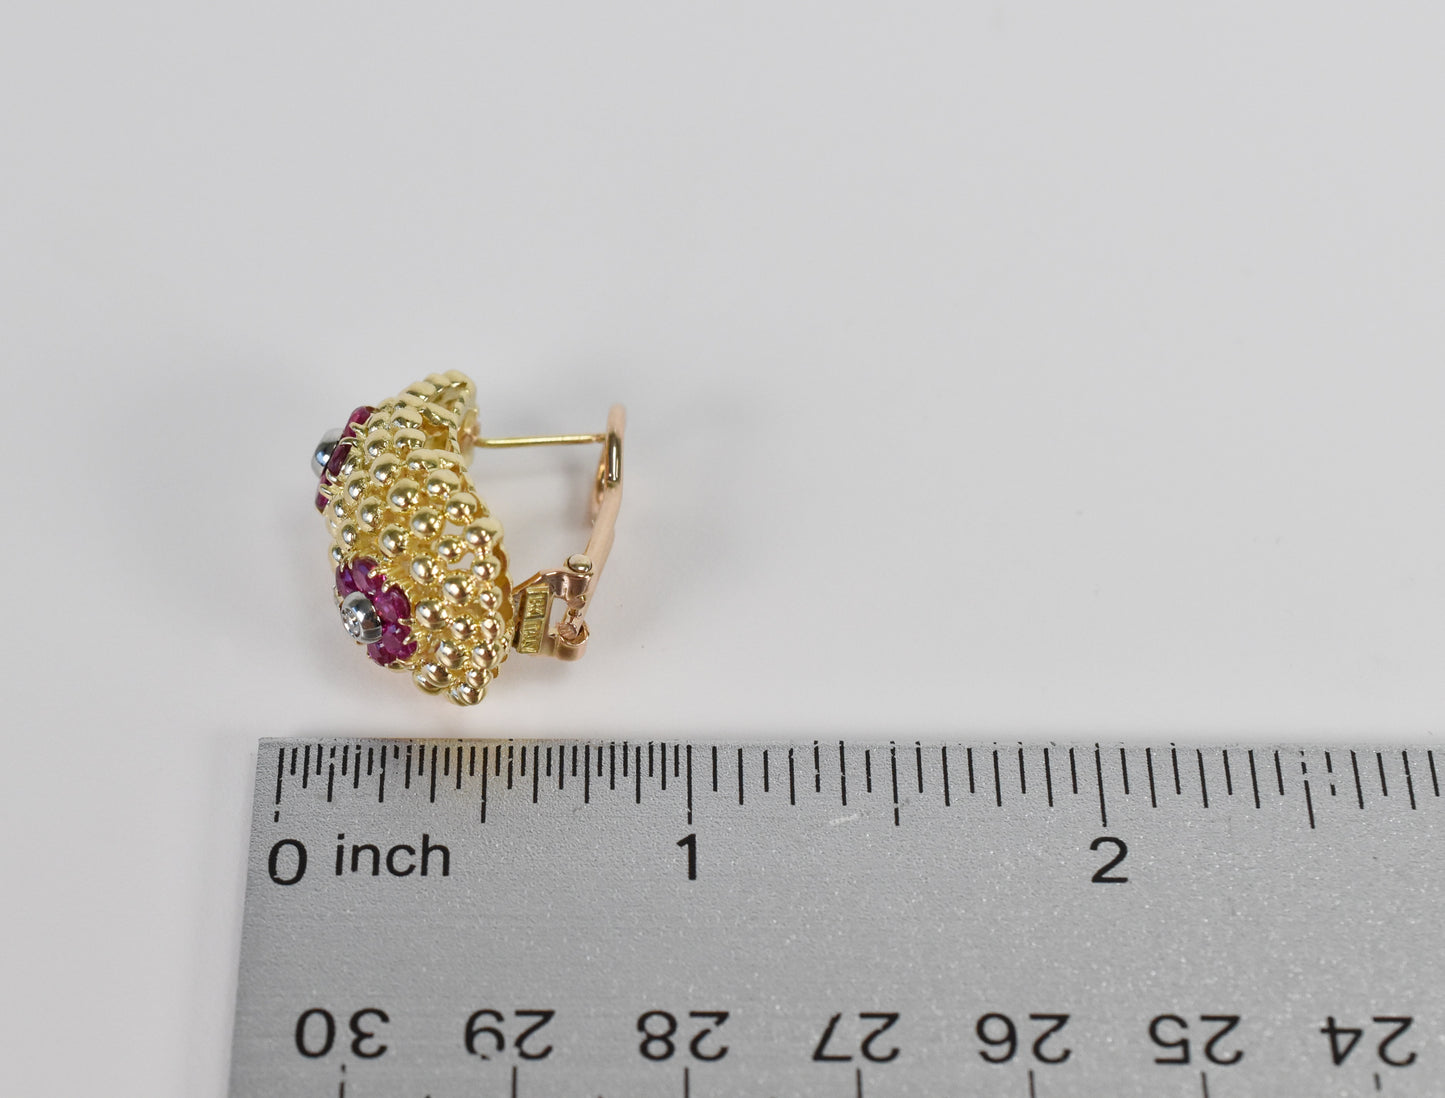 Shreve & Co. 18k Tri-Gold Flower Ruby & Diamond Earrings, 19.4g